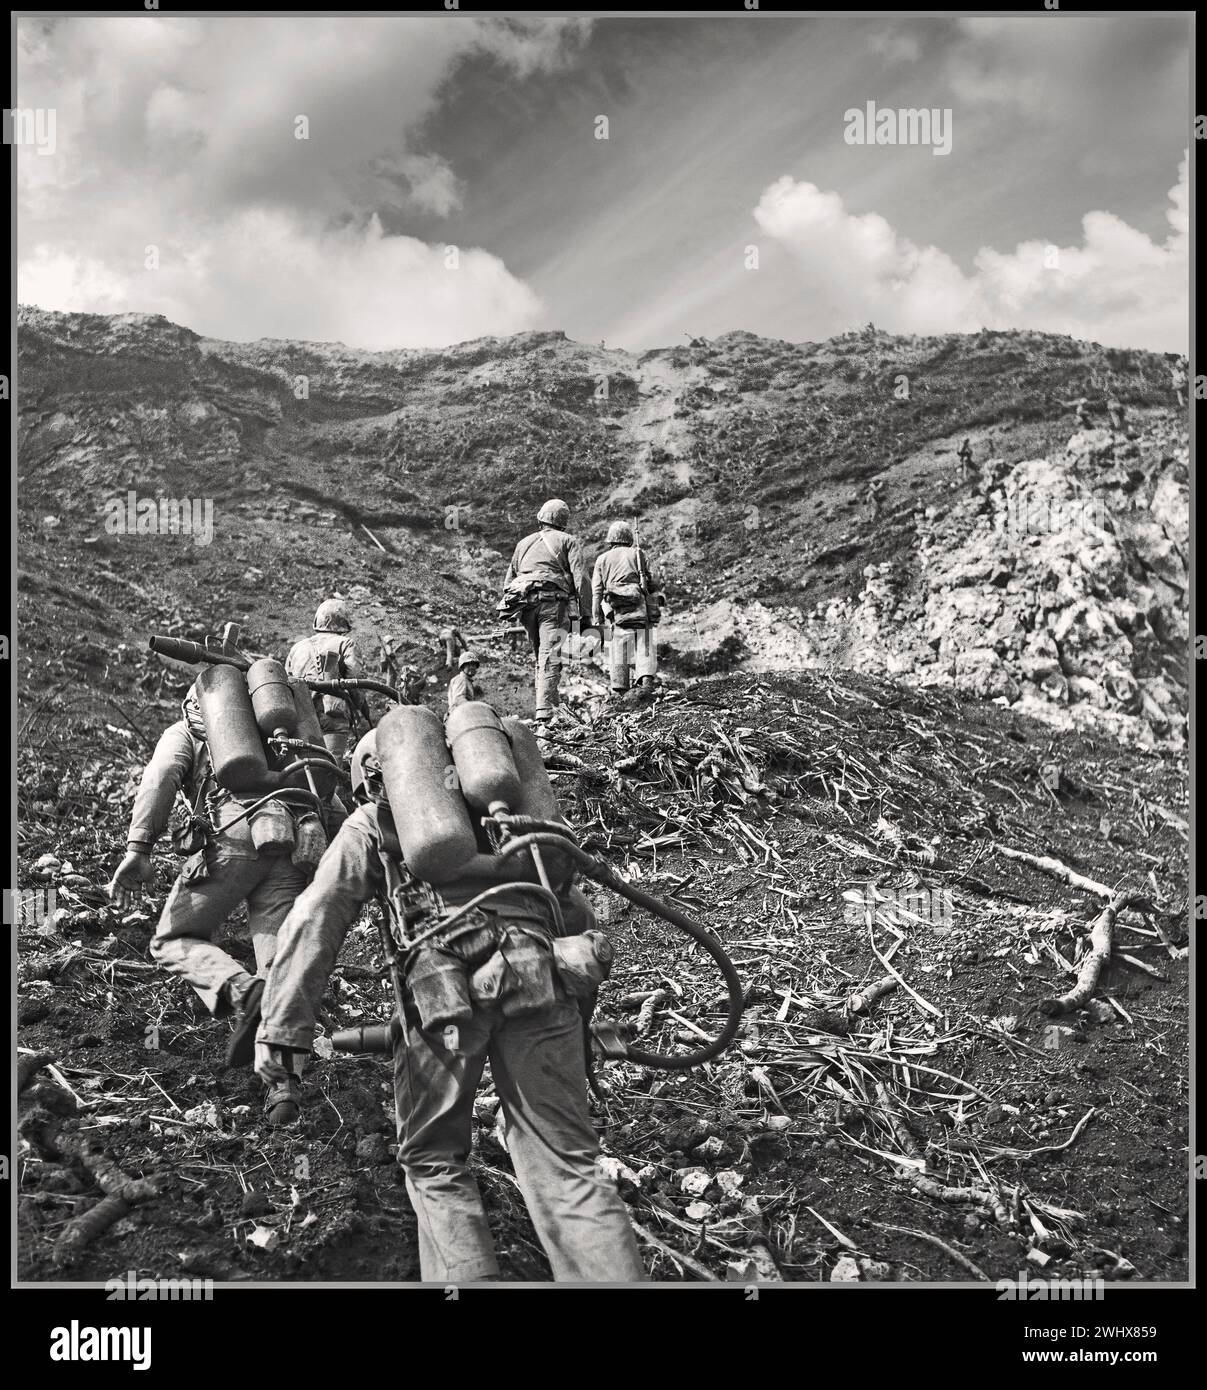 WW2 Iwo Jima. Les Marines américains avancent au sommet de Suribachi Feb 1945 lance-flammes au premier plan pour neutraliser les nombreux bunkers japonais et foxholes construits sur toute l'île. La bataille d'Iwo Jima est une bataille majeure au cours de laquelle le corps des Marines des États-Unis et la marine des États-Unis débarquent et finissent par capturer l'île d'Iwo Jima de l'armée impériale japonaise pendant la seconde Guerre mondiale Seconde Guerre mondiale. Guerre du Pacifique Banque D'Images